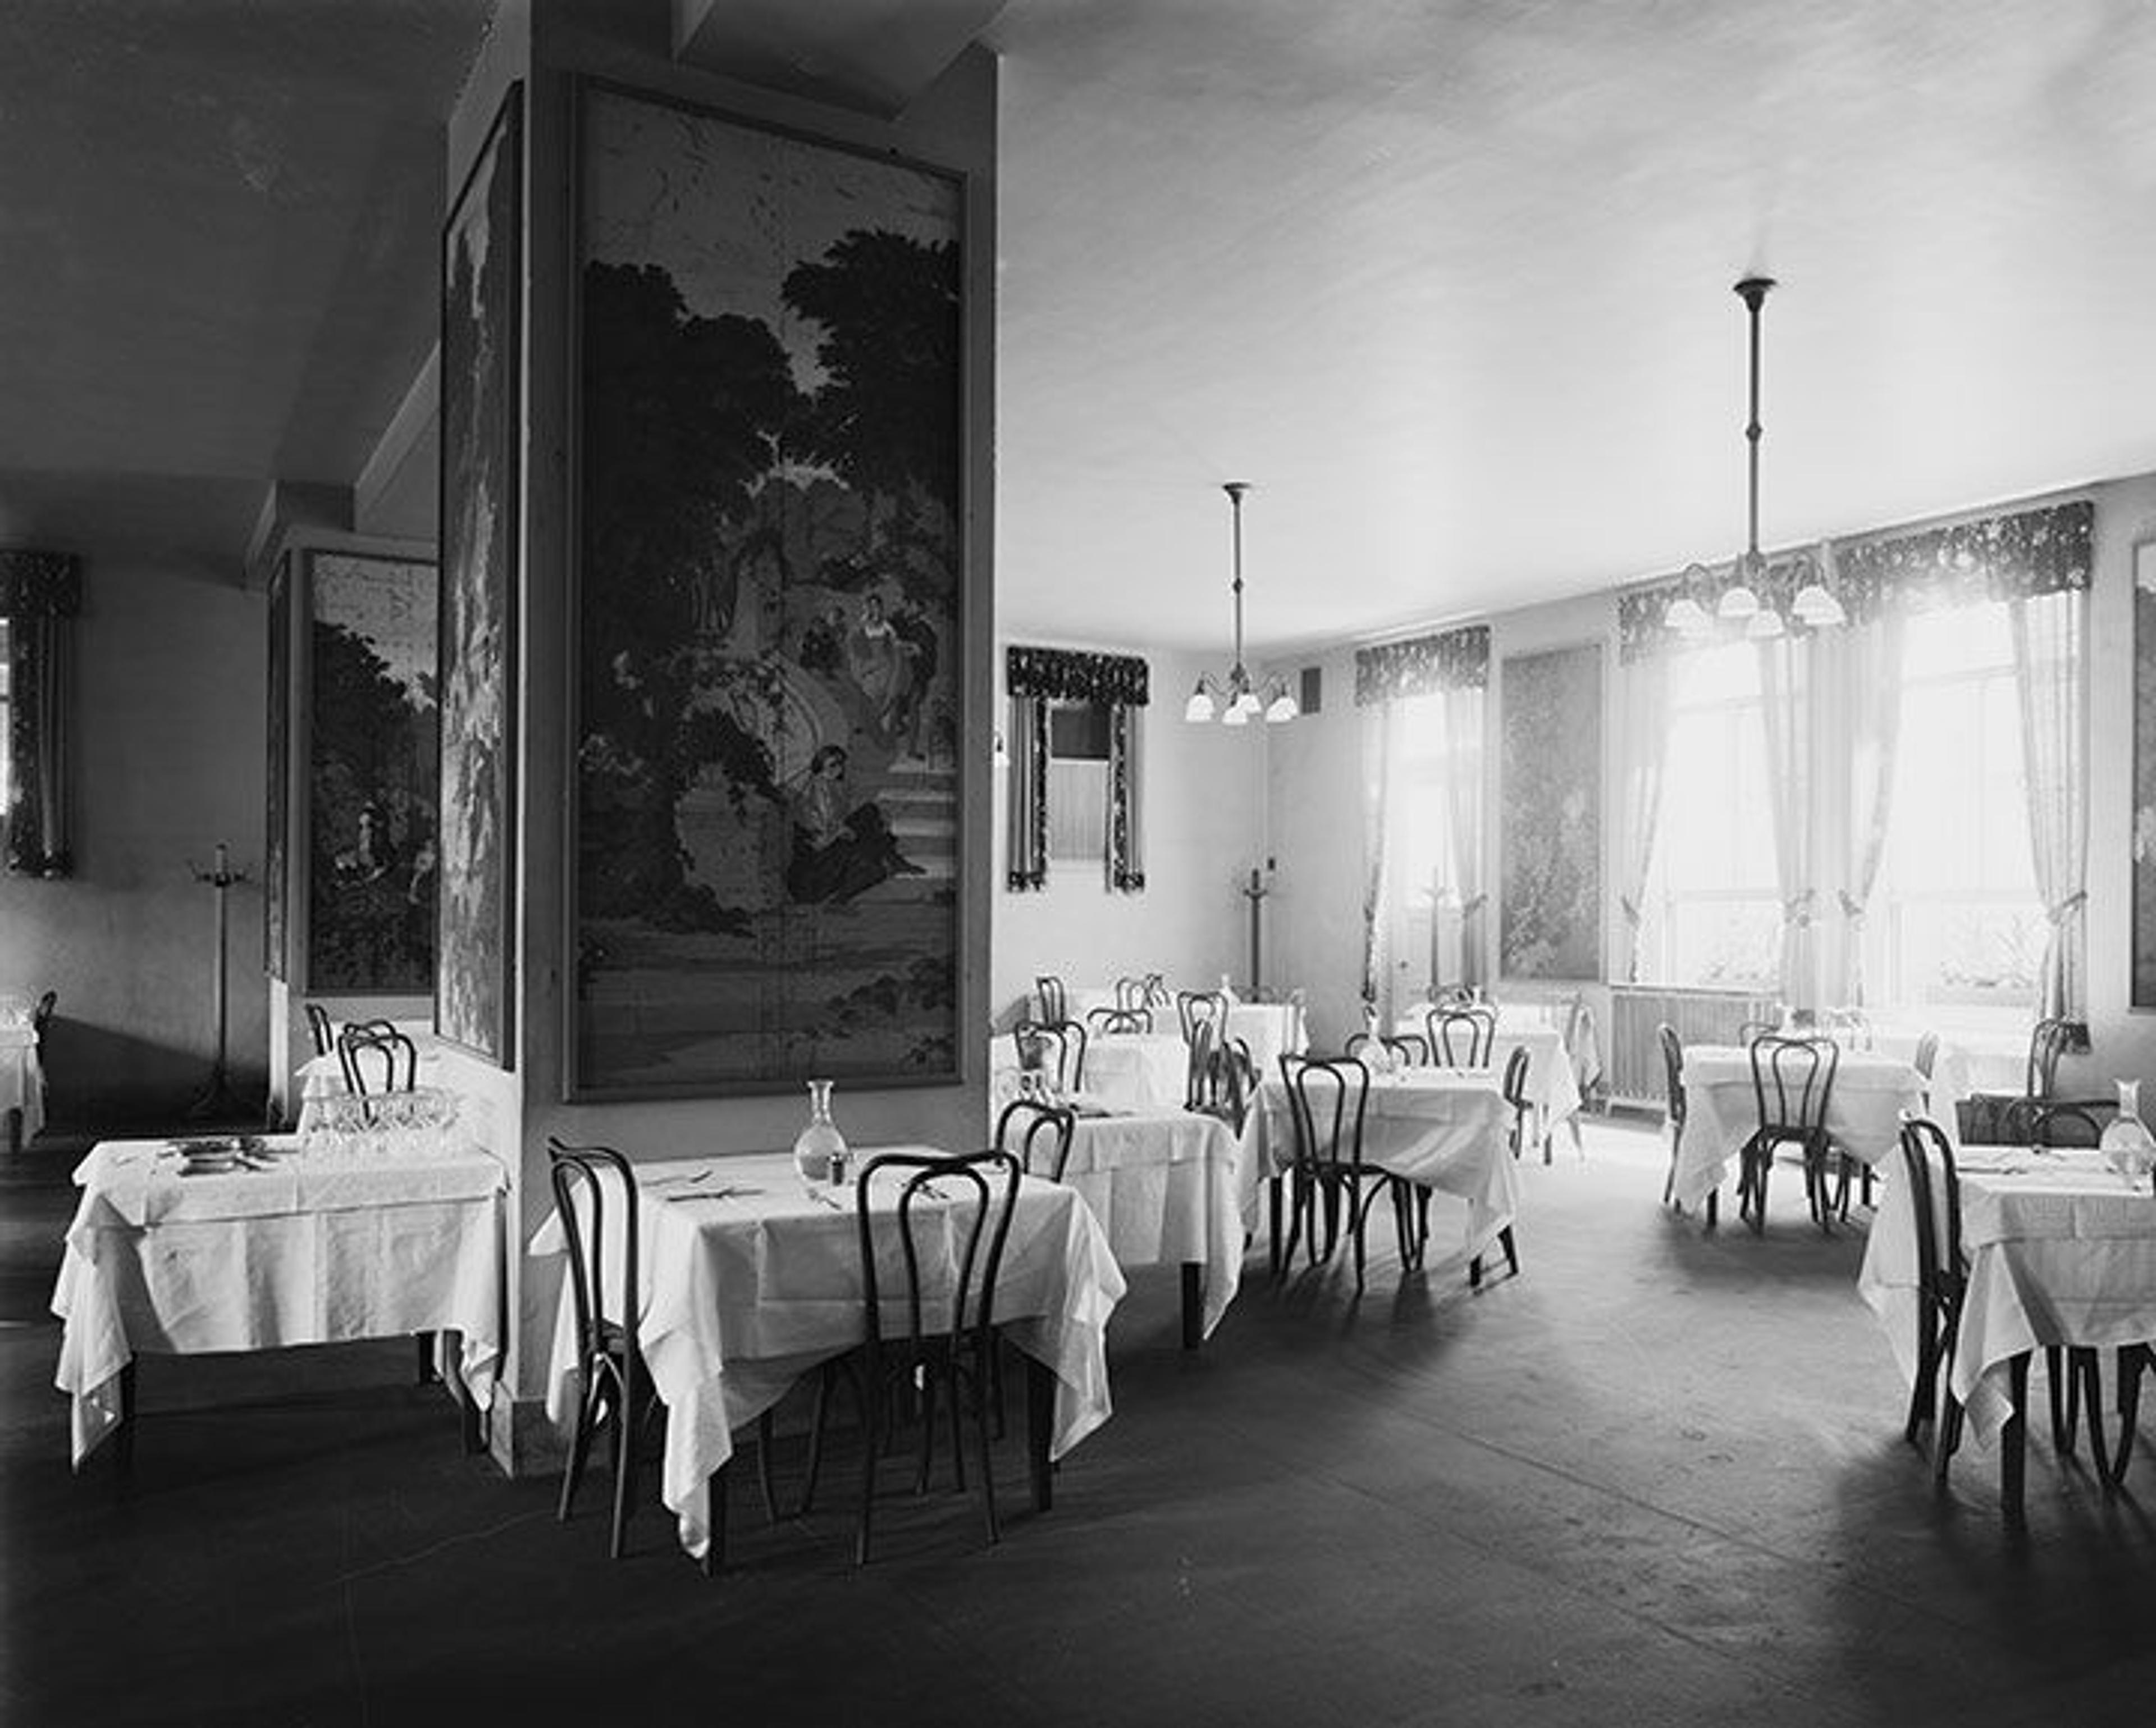 The Met's restaurant in 1918